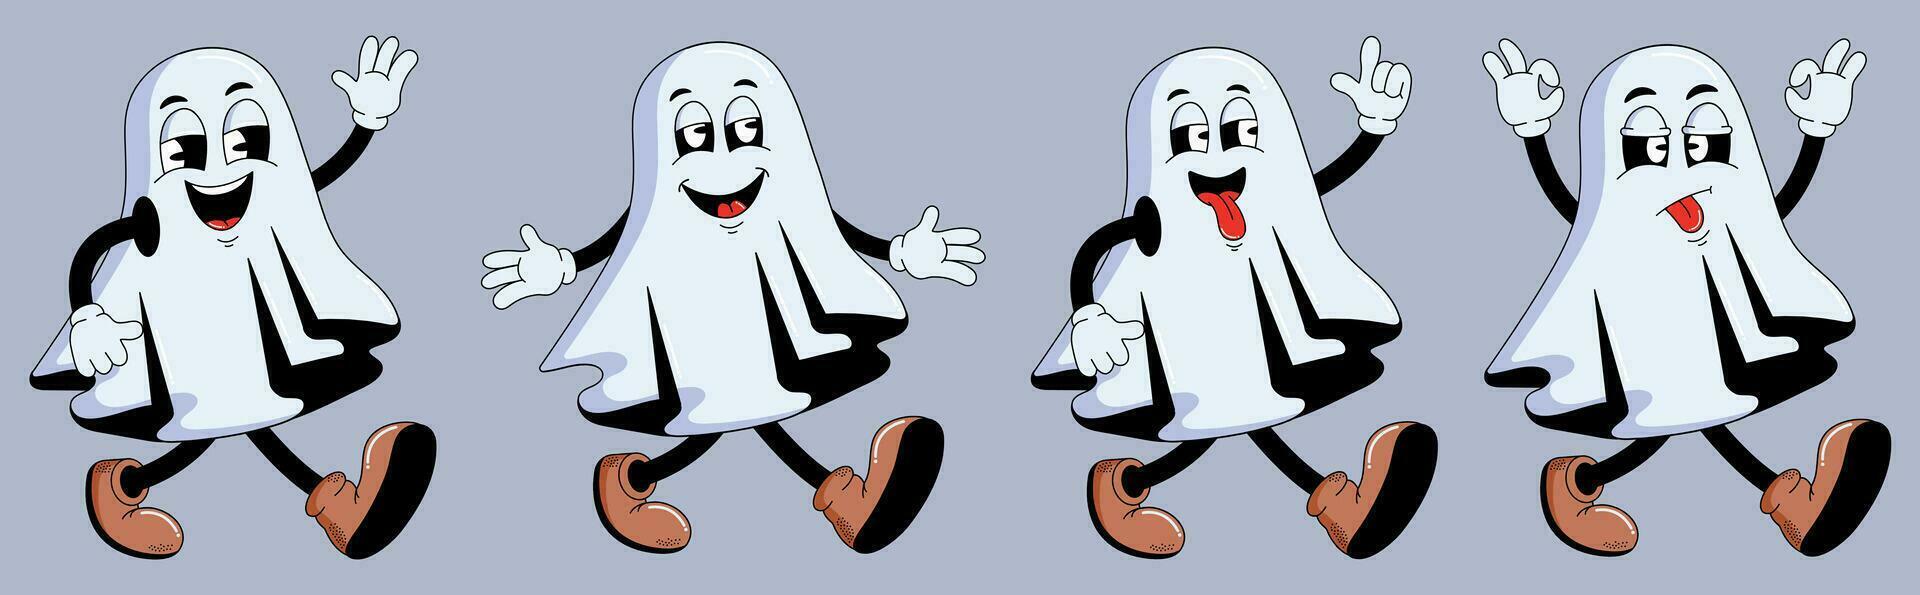 Groovy cartoon characters Halloween ghosts. Happy Halloween. Fashion vector illustration.